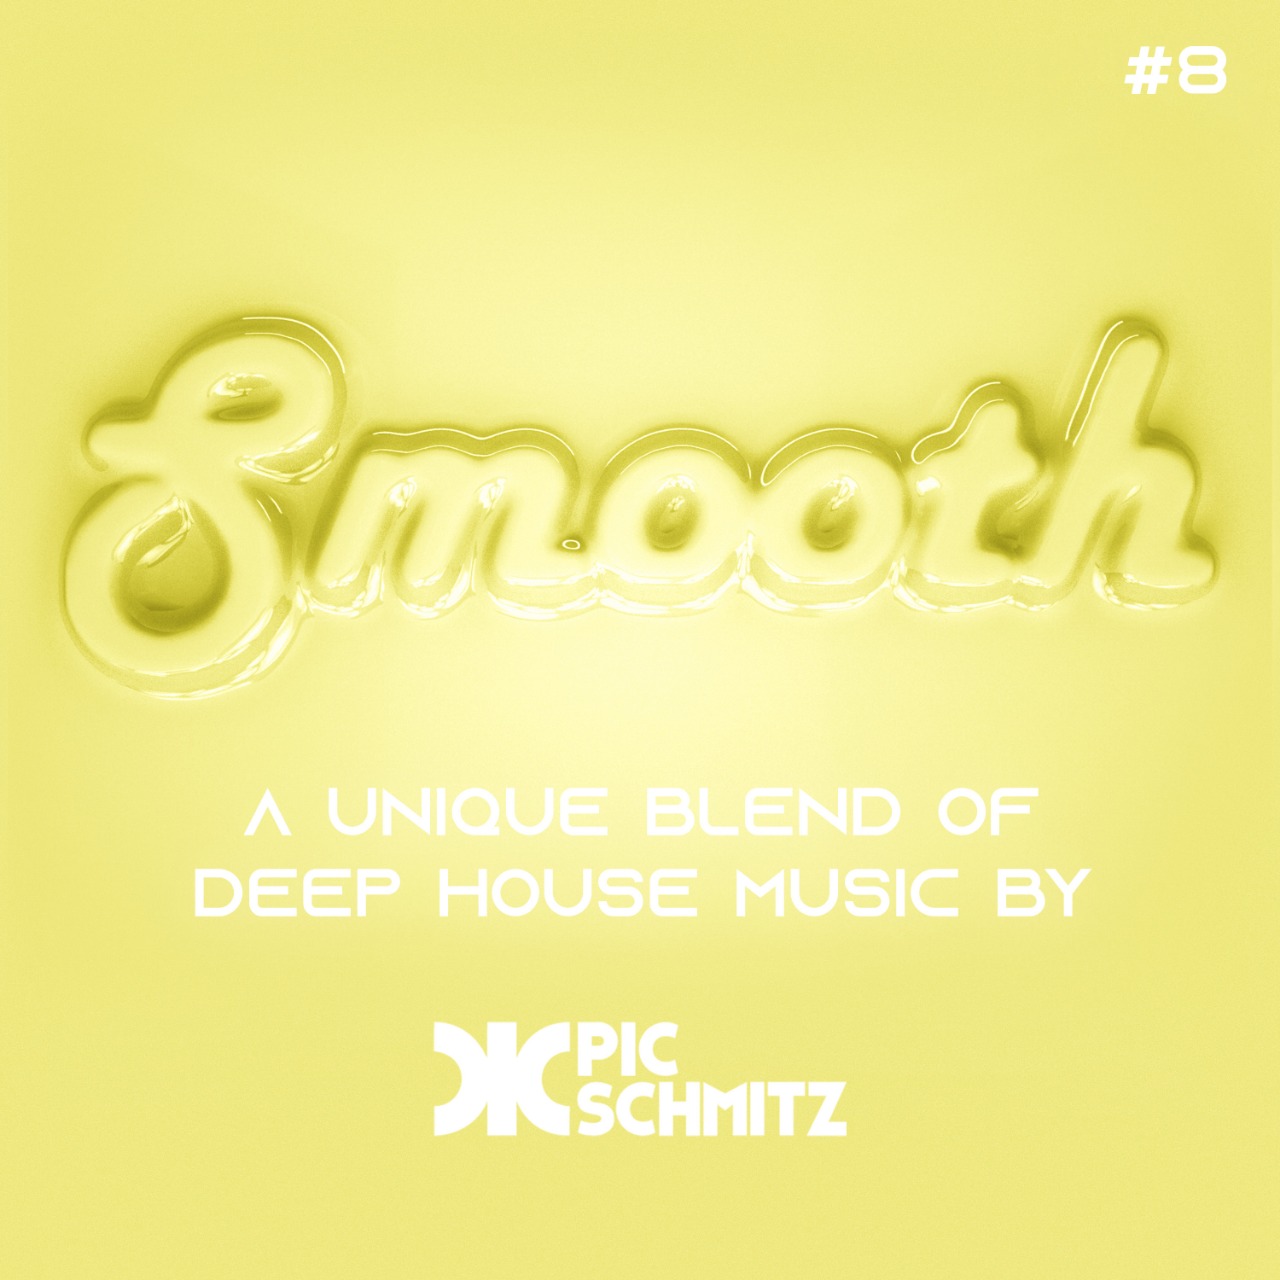 Smooth #8 | Pic Schmitz